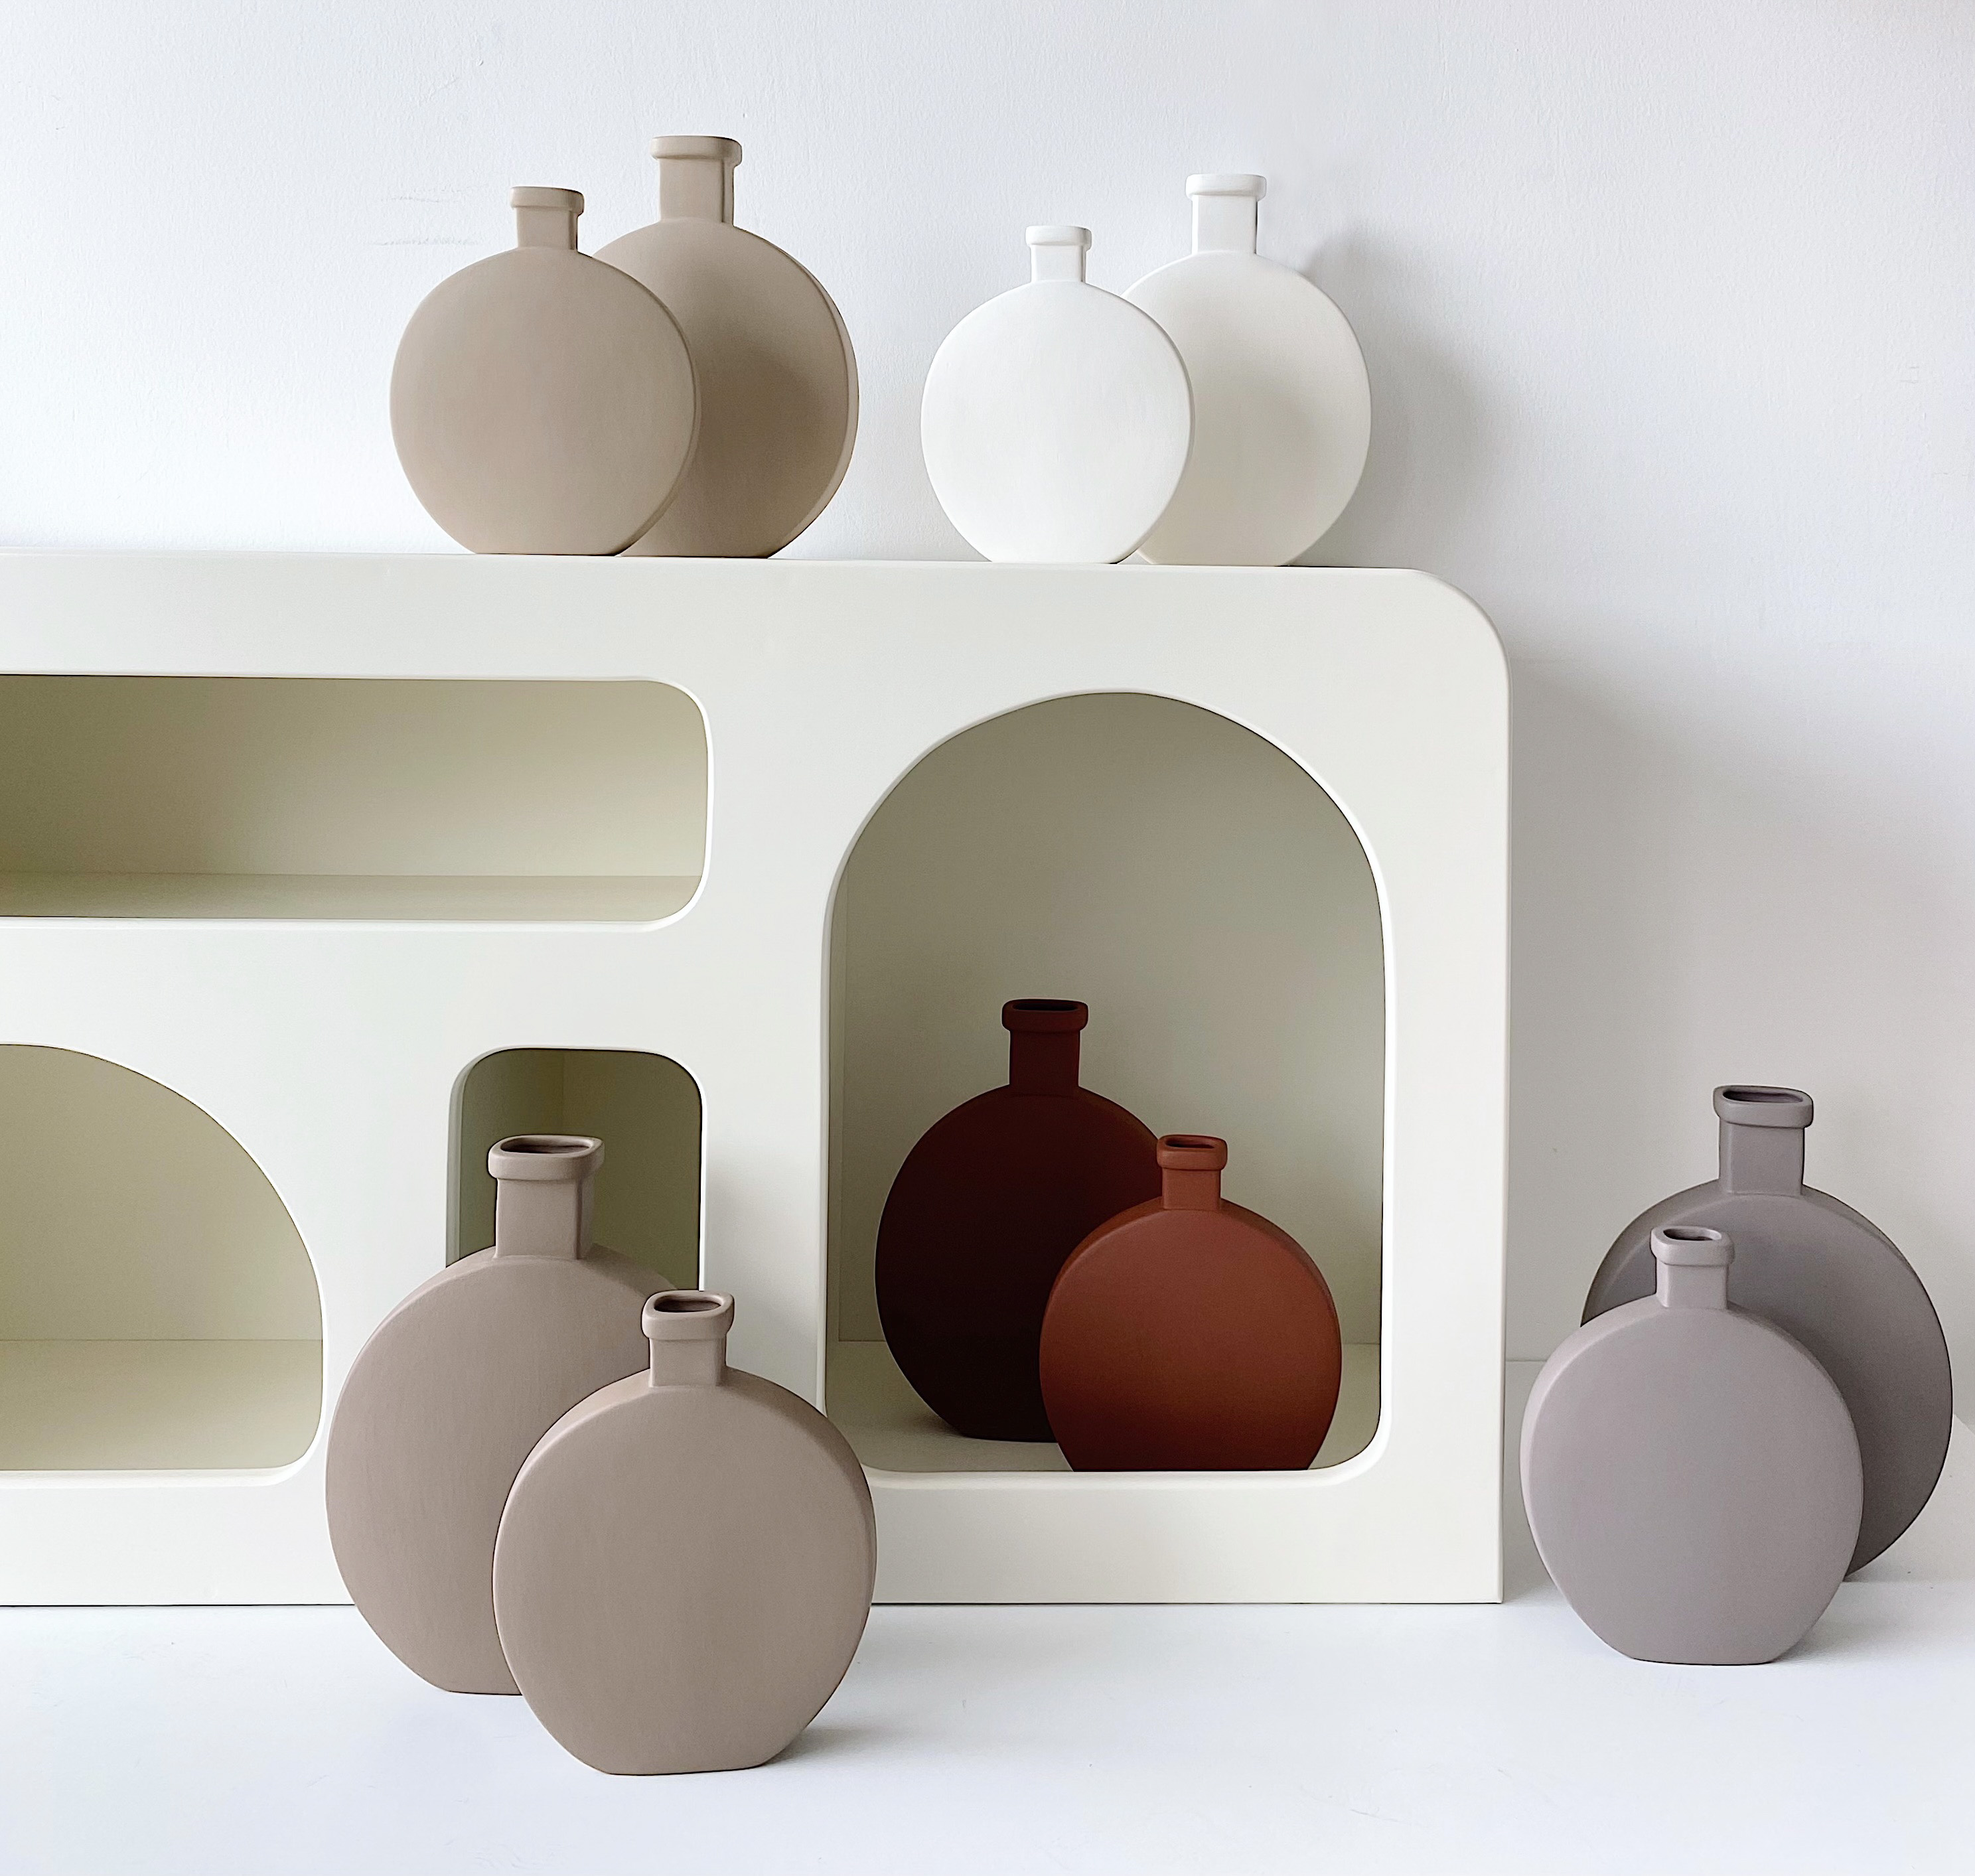 Matery 2 pcs Ceramic Vase Set Beige